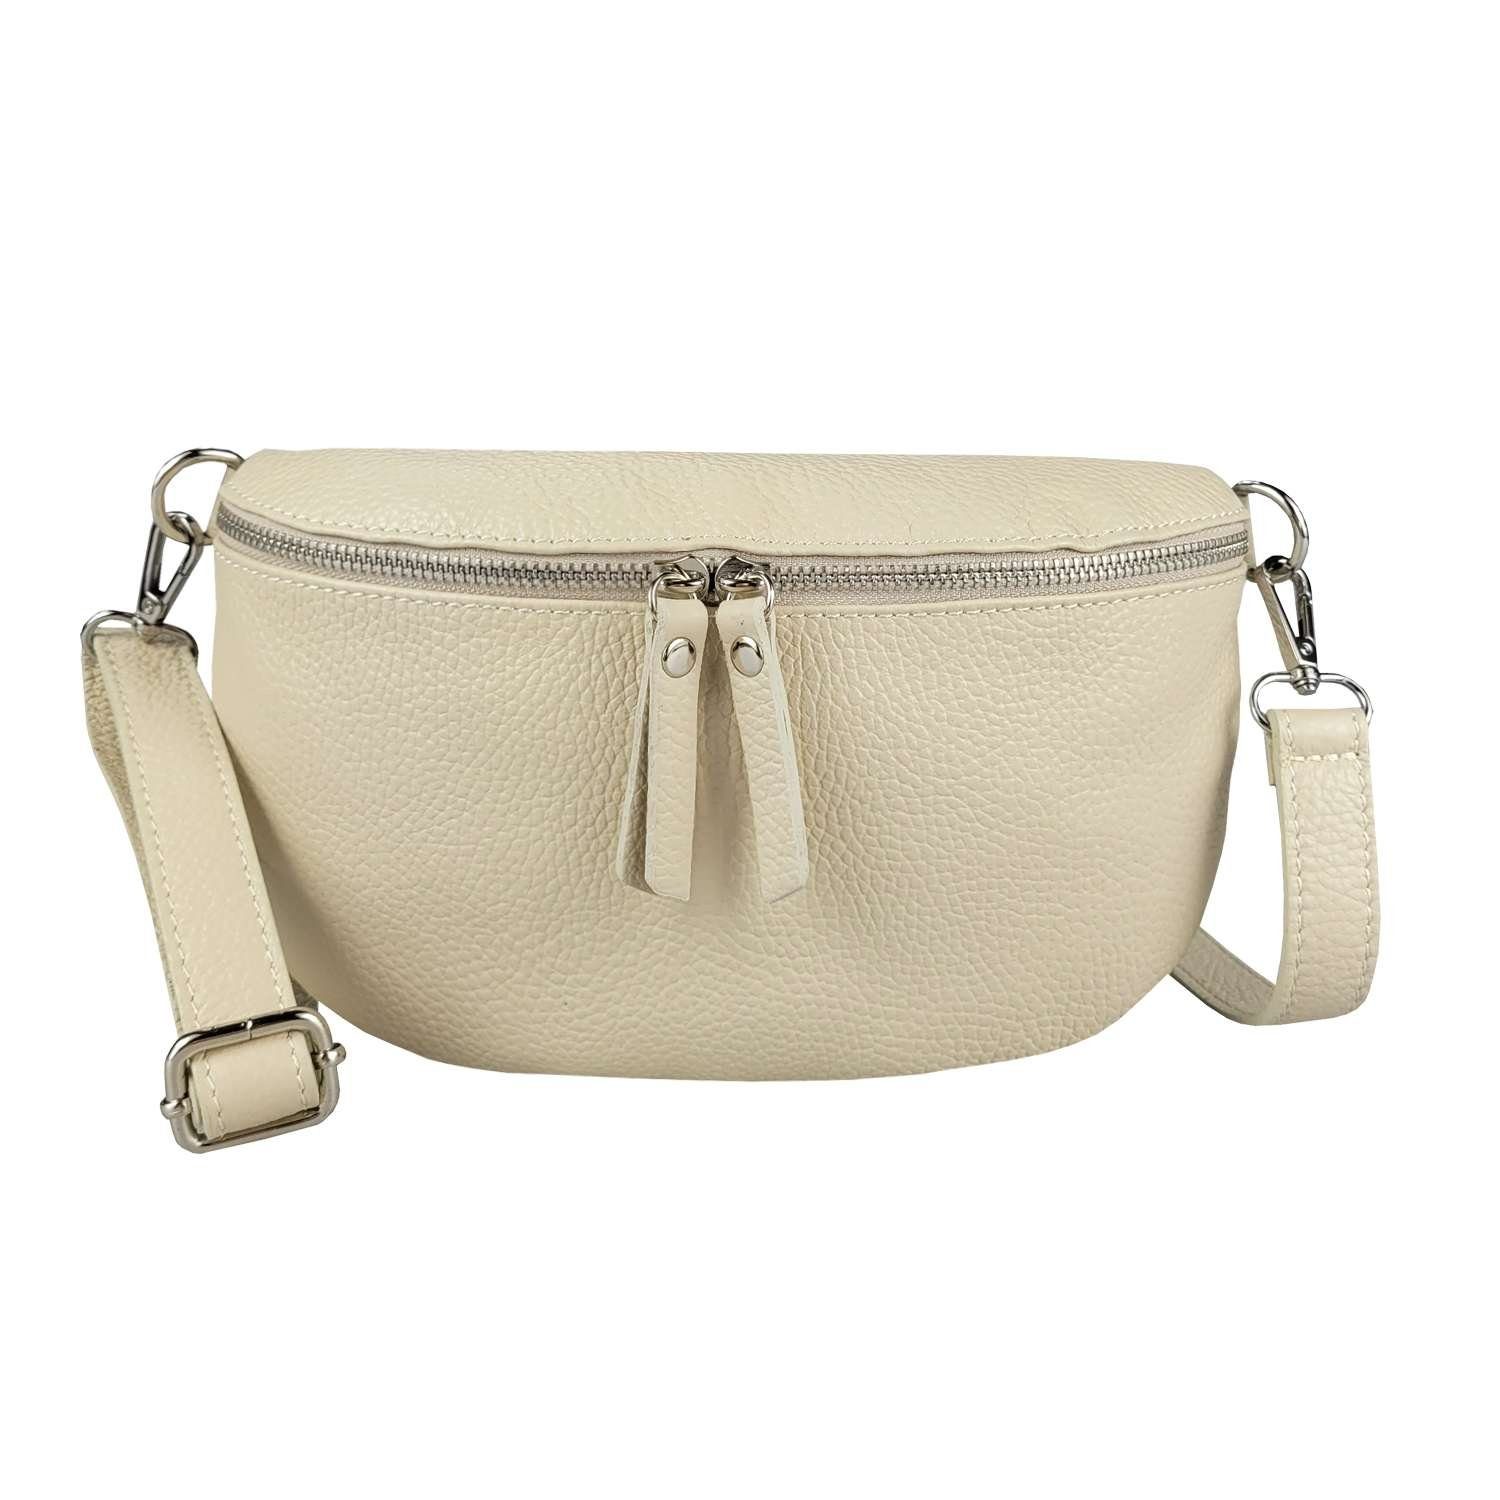 ITALYSHOP24 Bauchtasche Damen Leder Gürteltasche Hüfttasche CrossBody Bag, als Schultertasche, CrossOver, Umhängetasche tragbar